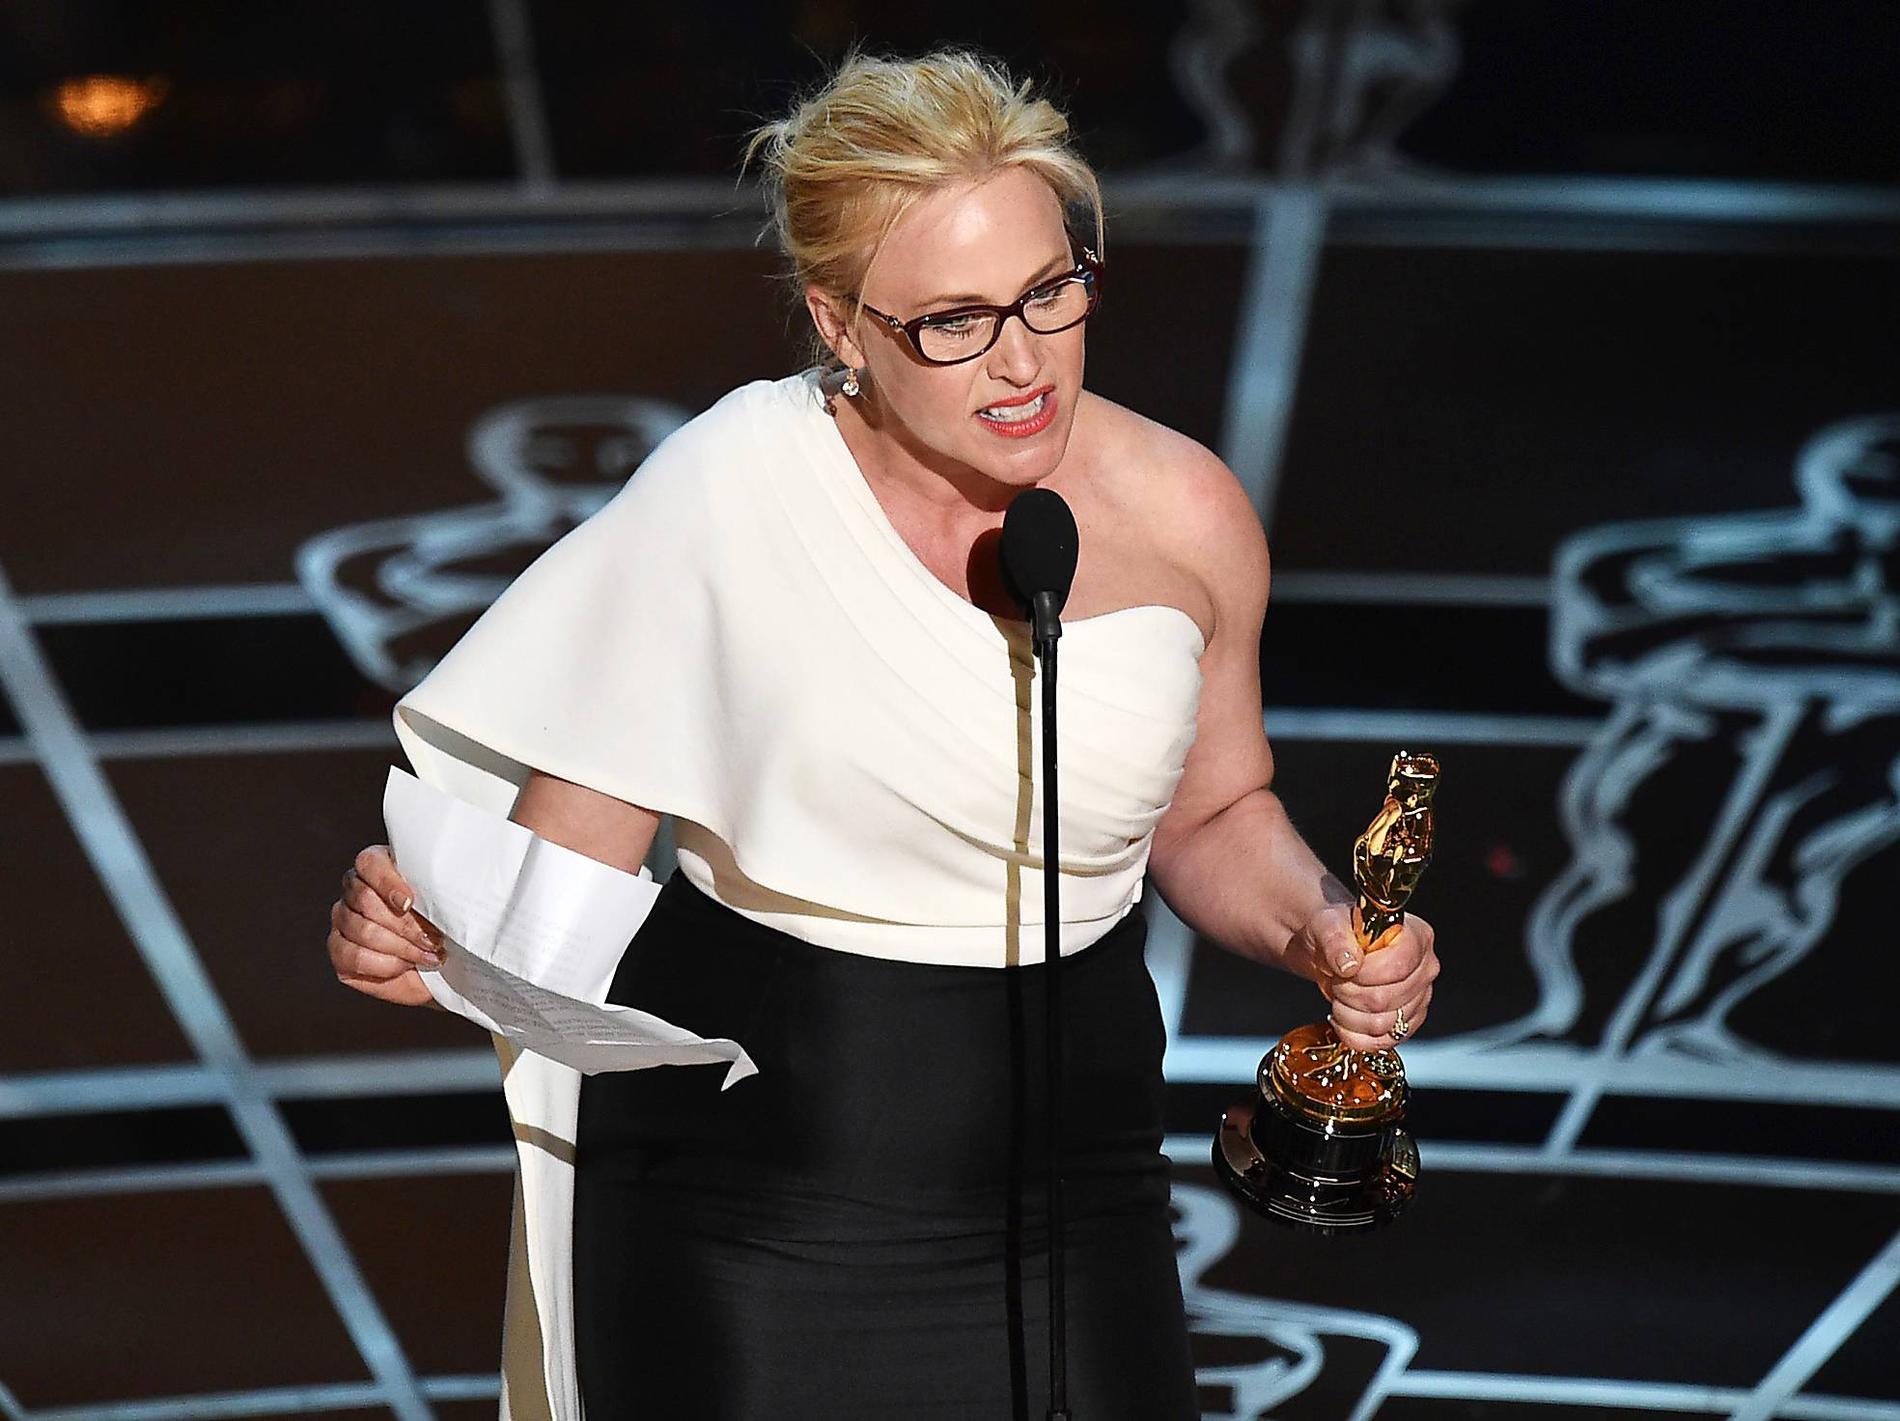 Var hjälte - en kort stund Patricia Arquette var allas hjälte när hon under Oscarsgalan höll ett brandtal för kvinnors rättigheter. På en olycksalig presskonferens efteråt gick det däremot fel. Men hon gjorde trots allt ett försök - även om hon missade lite.